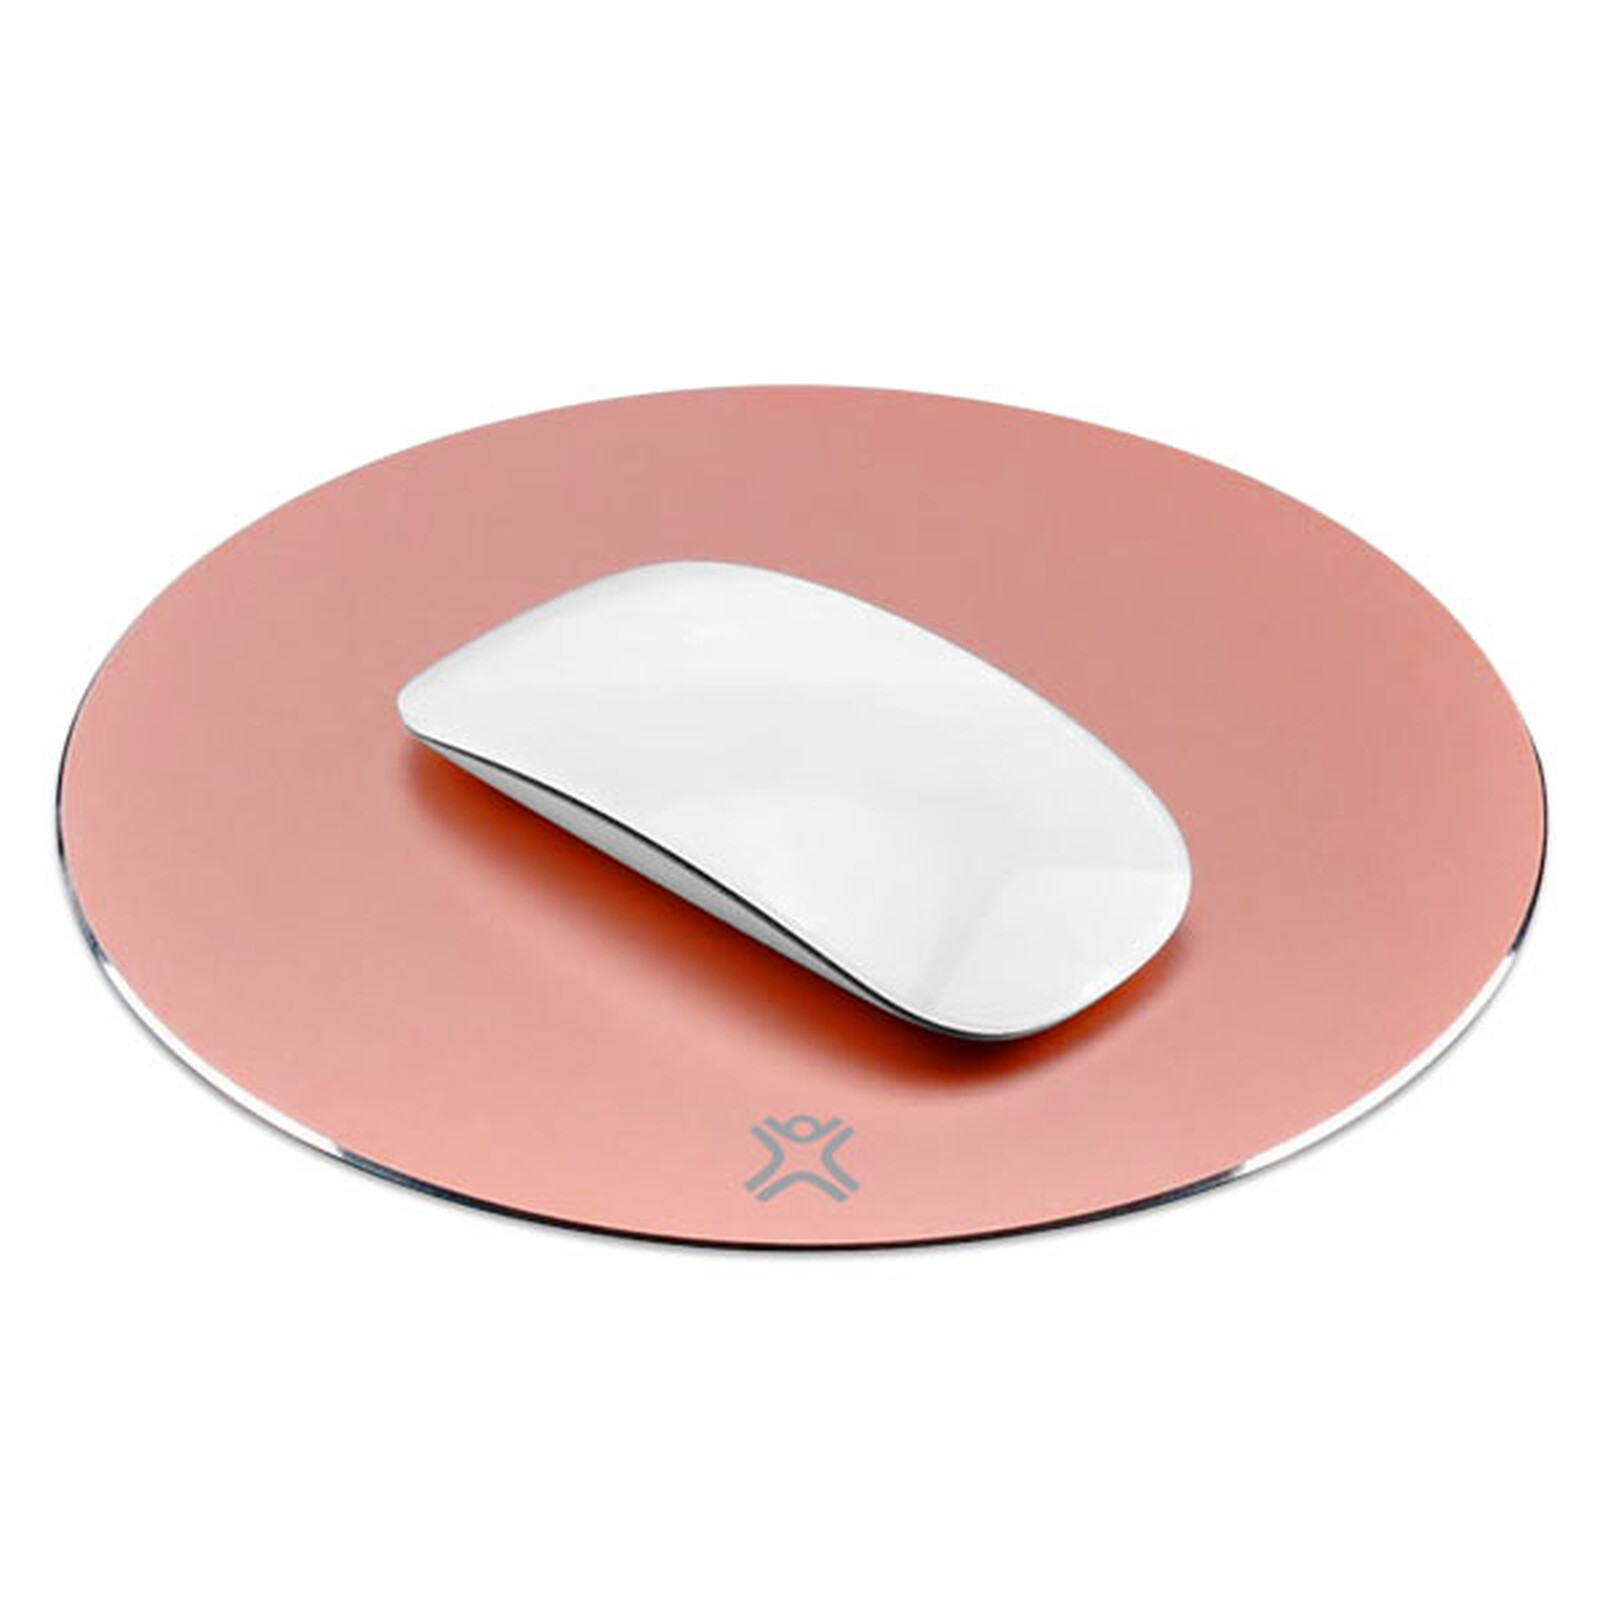 Tappetino per mouse in alluminio XtremeMac (rosa) - Tappetino mouse -  Garanzia 3 anni LDLC